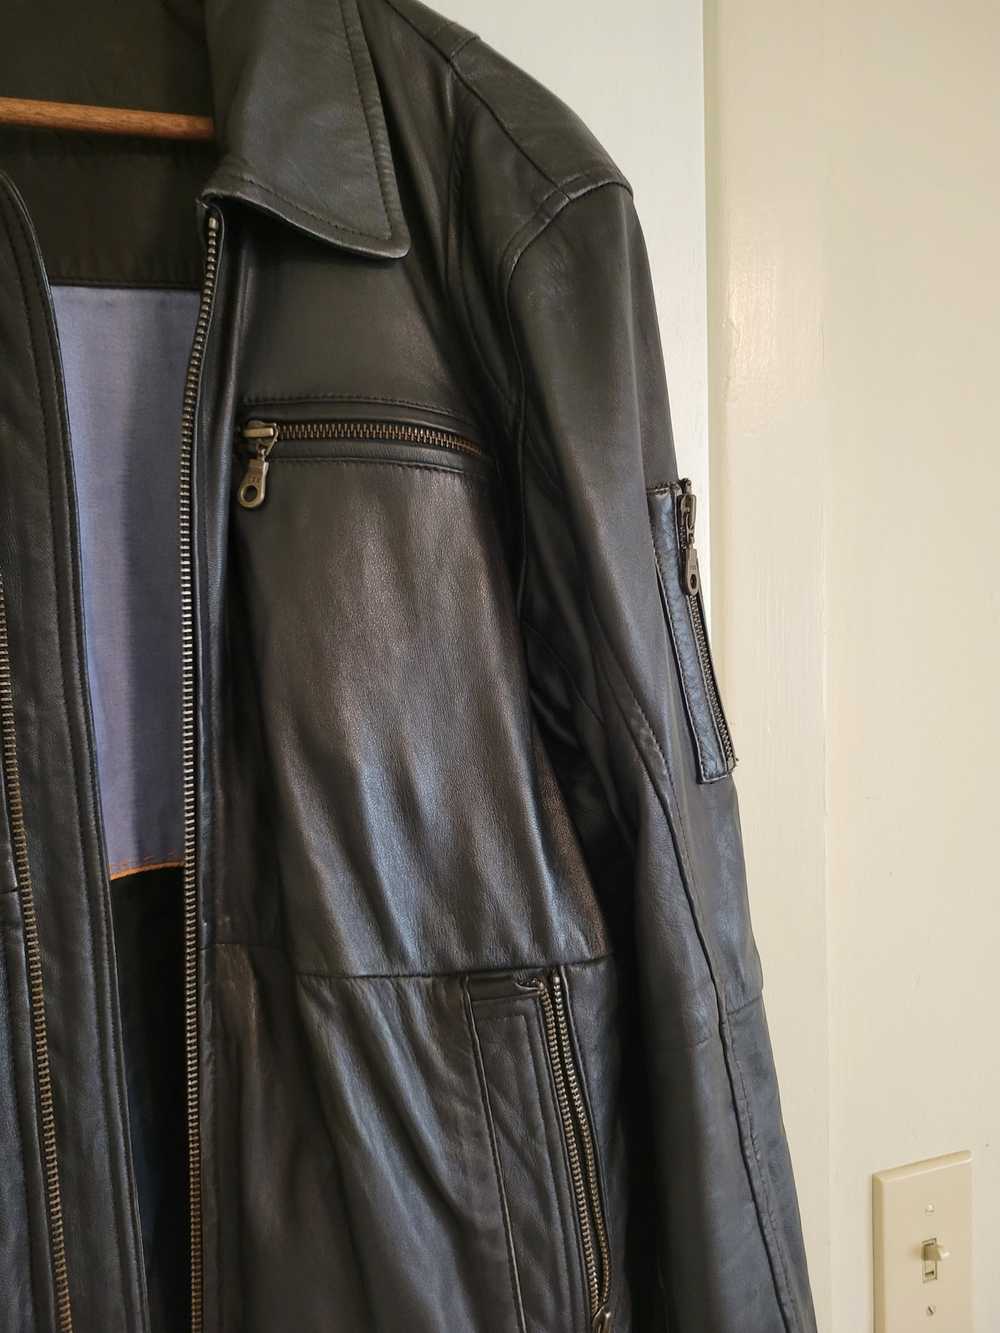 Designer Calfskin Leather Jacket - image 4